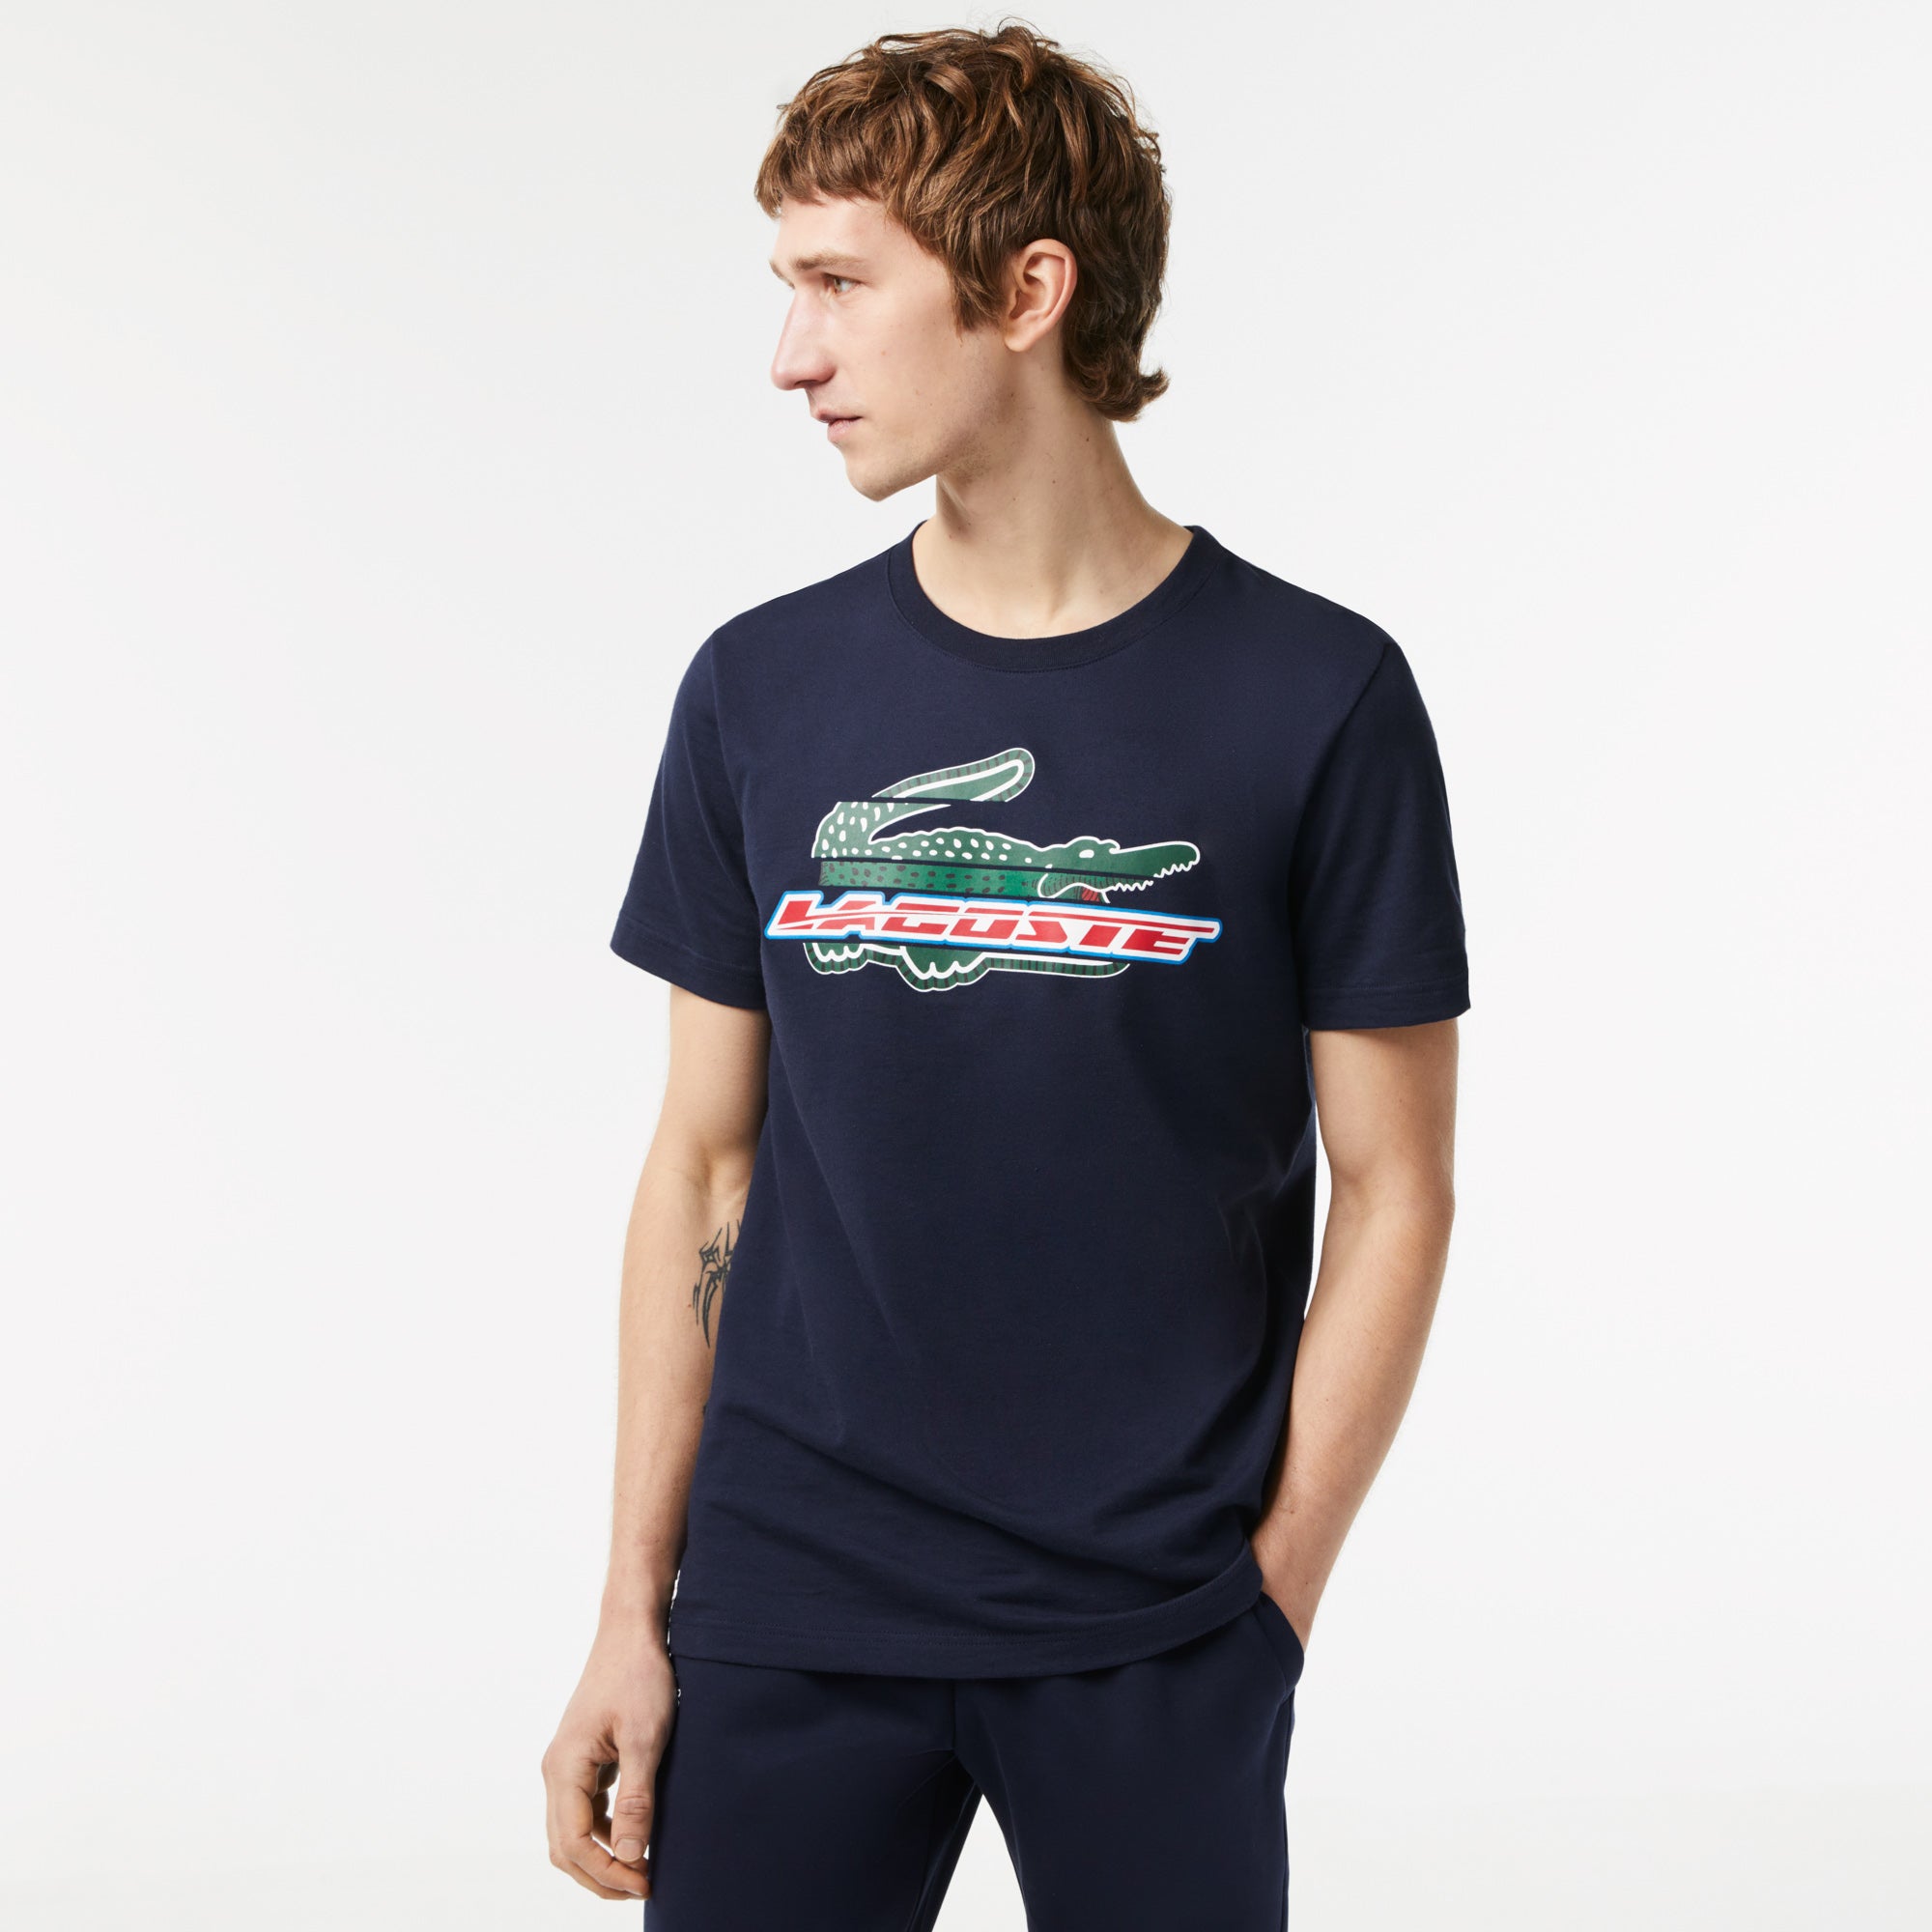 Men's Loose Fit Organic Cotton Piqué T-Shirt - Men's T-shirts